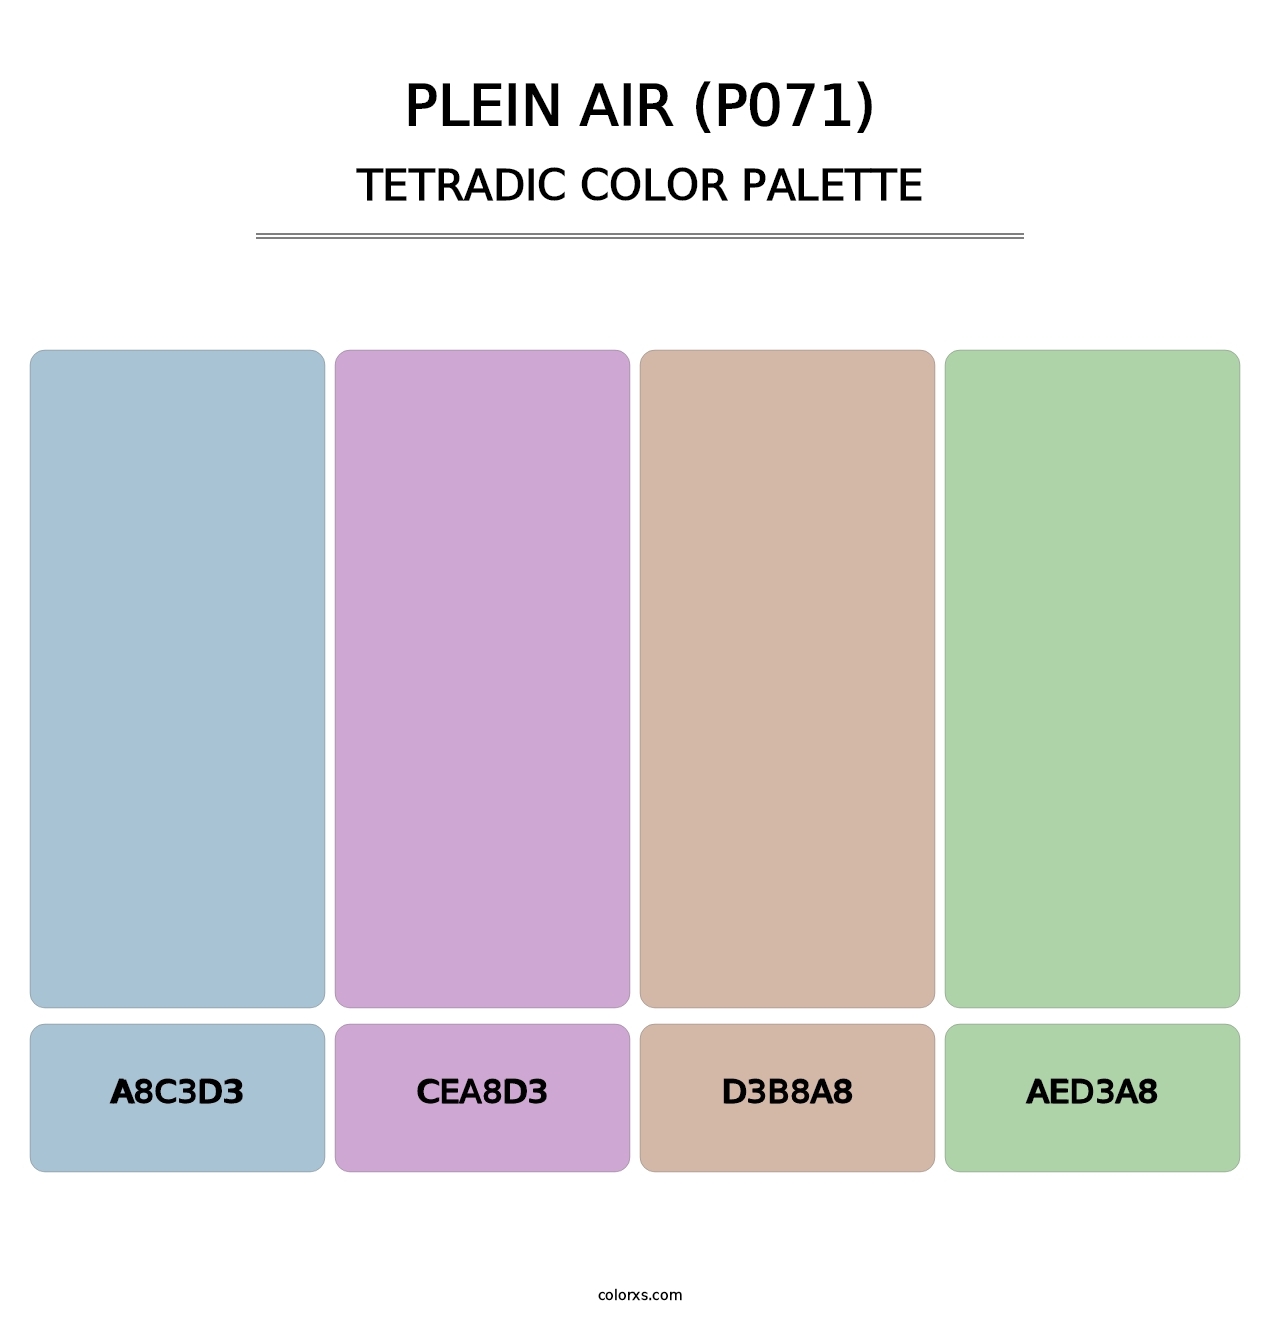 Plein Air (P071) - Tetradic Color Palette